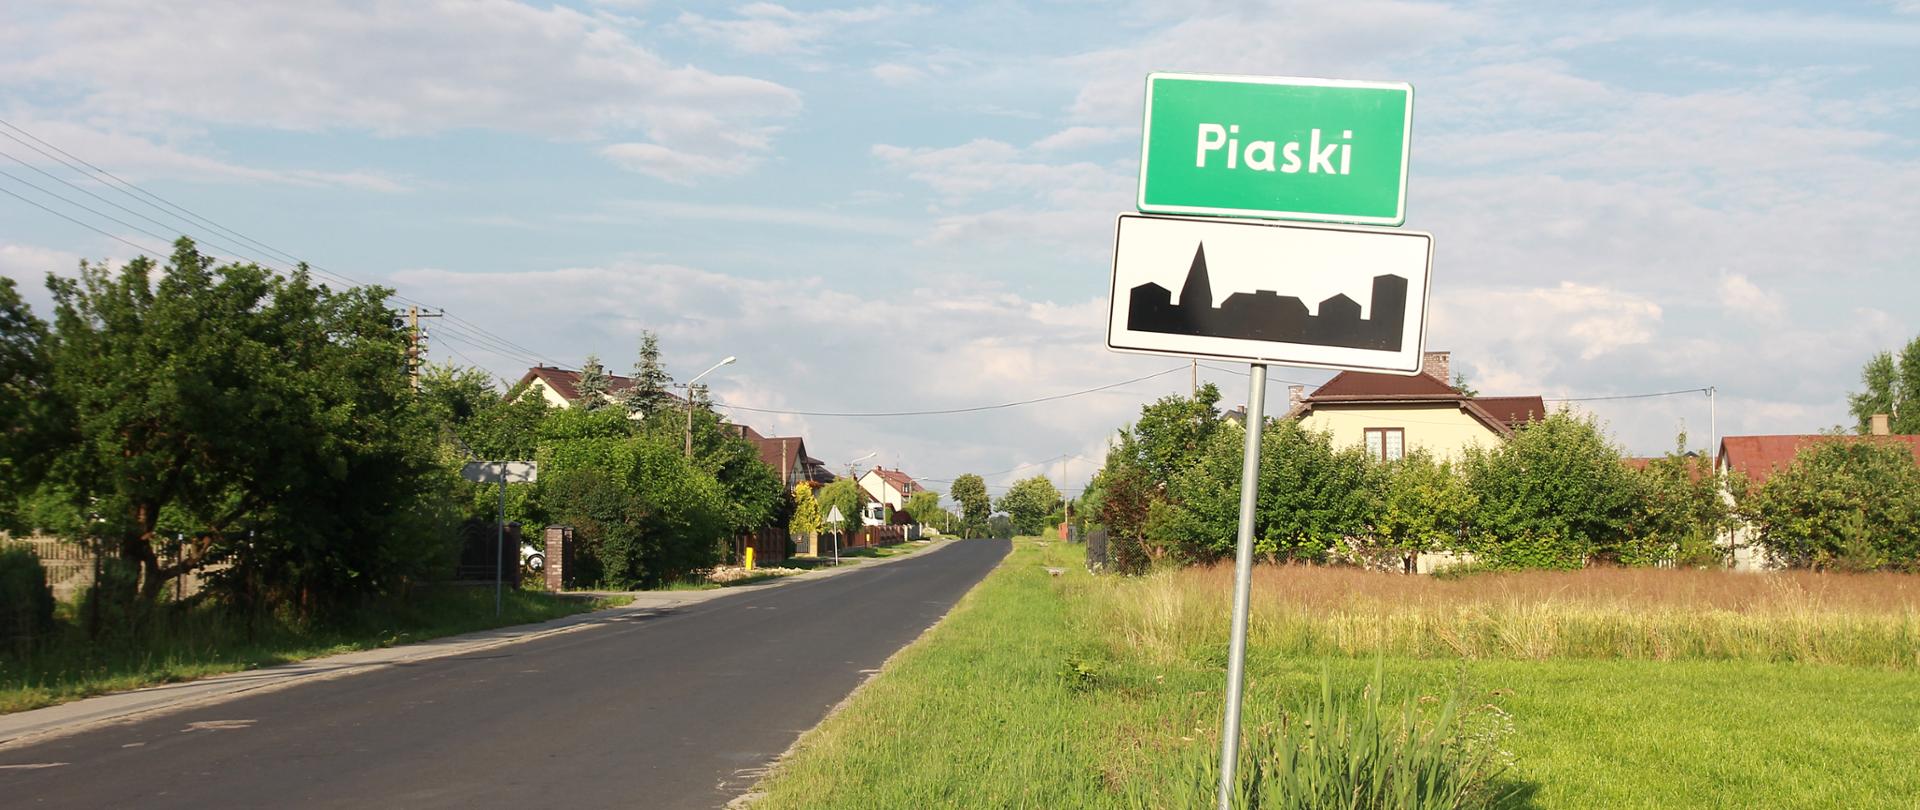 Sołectwo Piaski